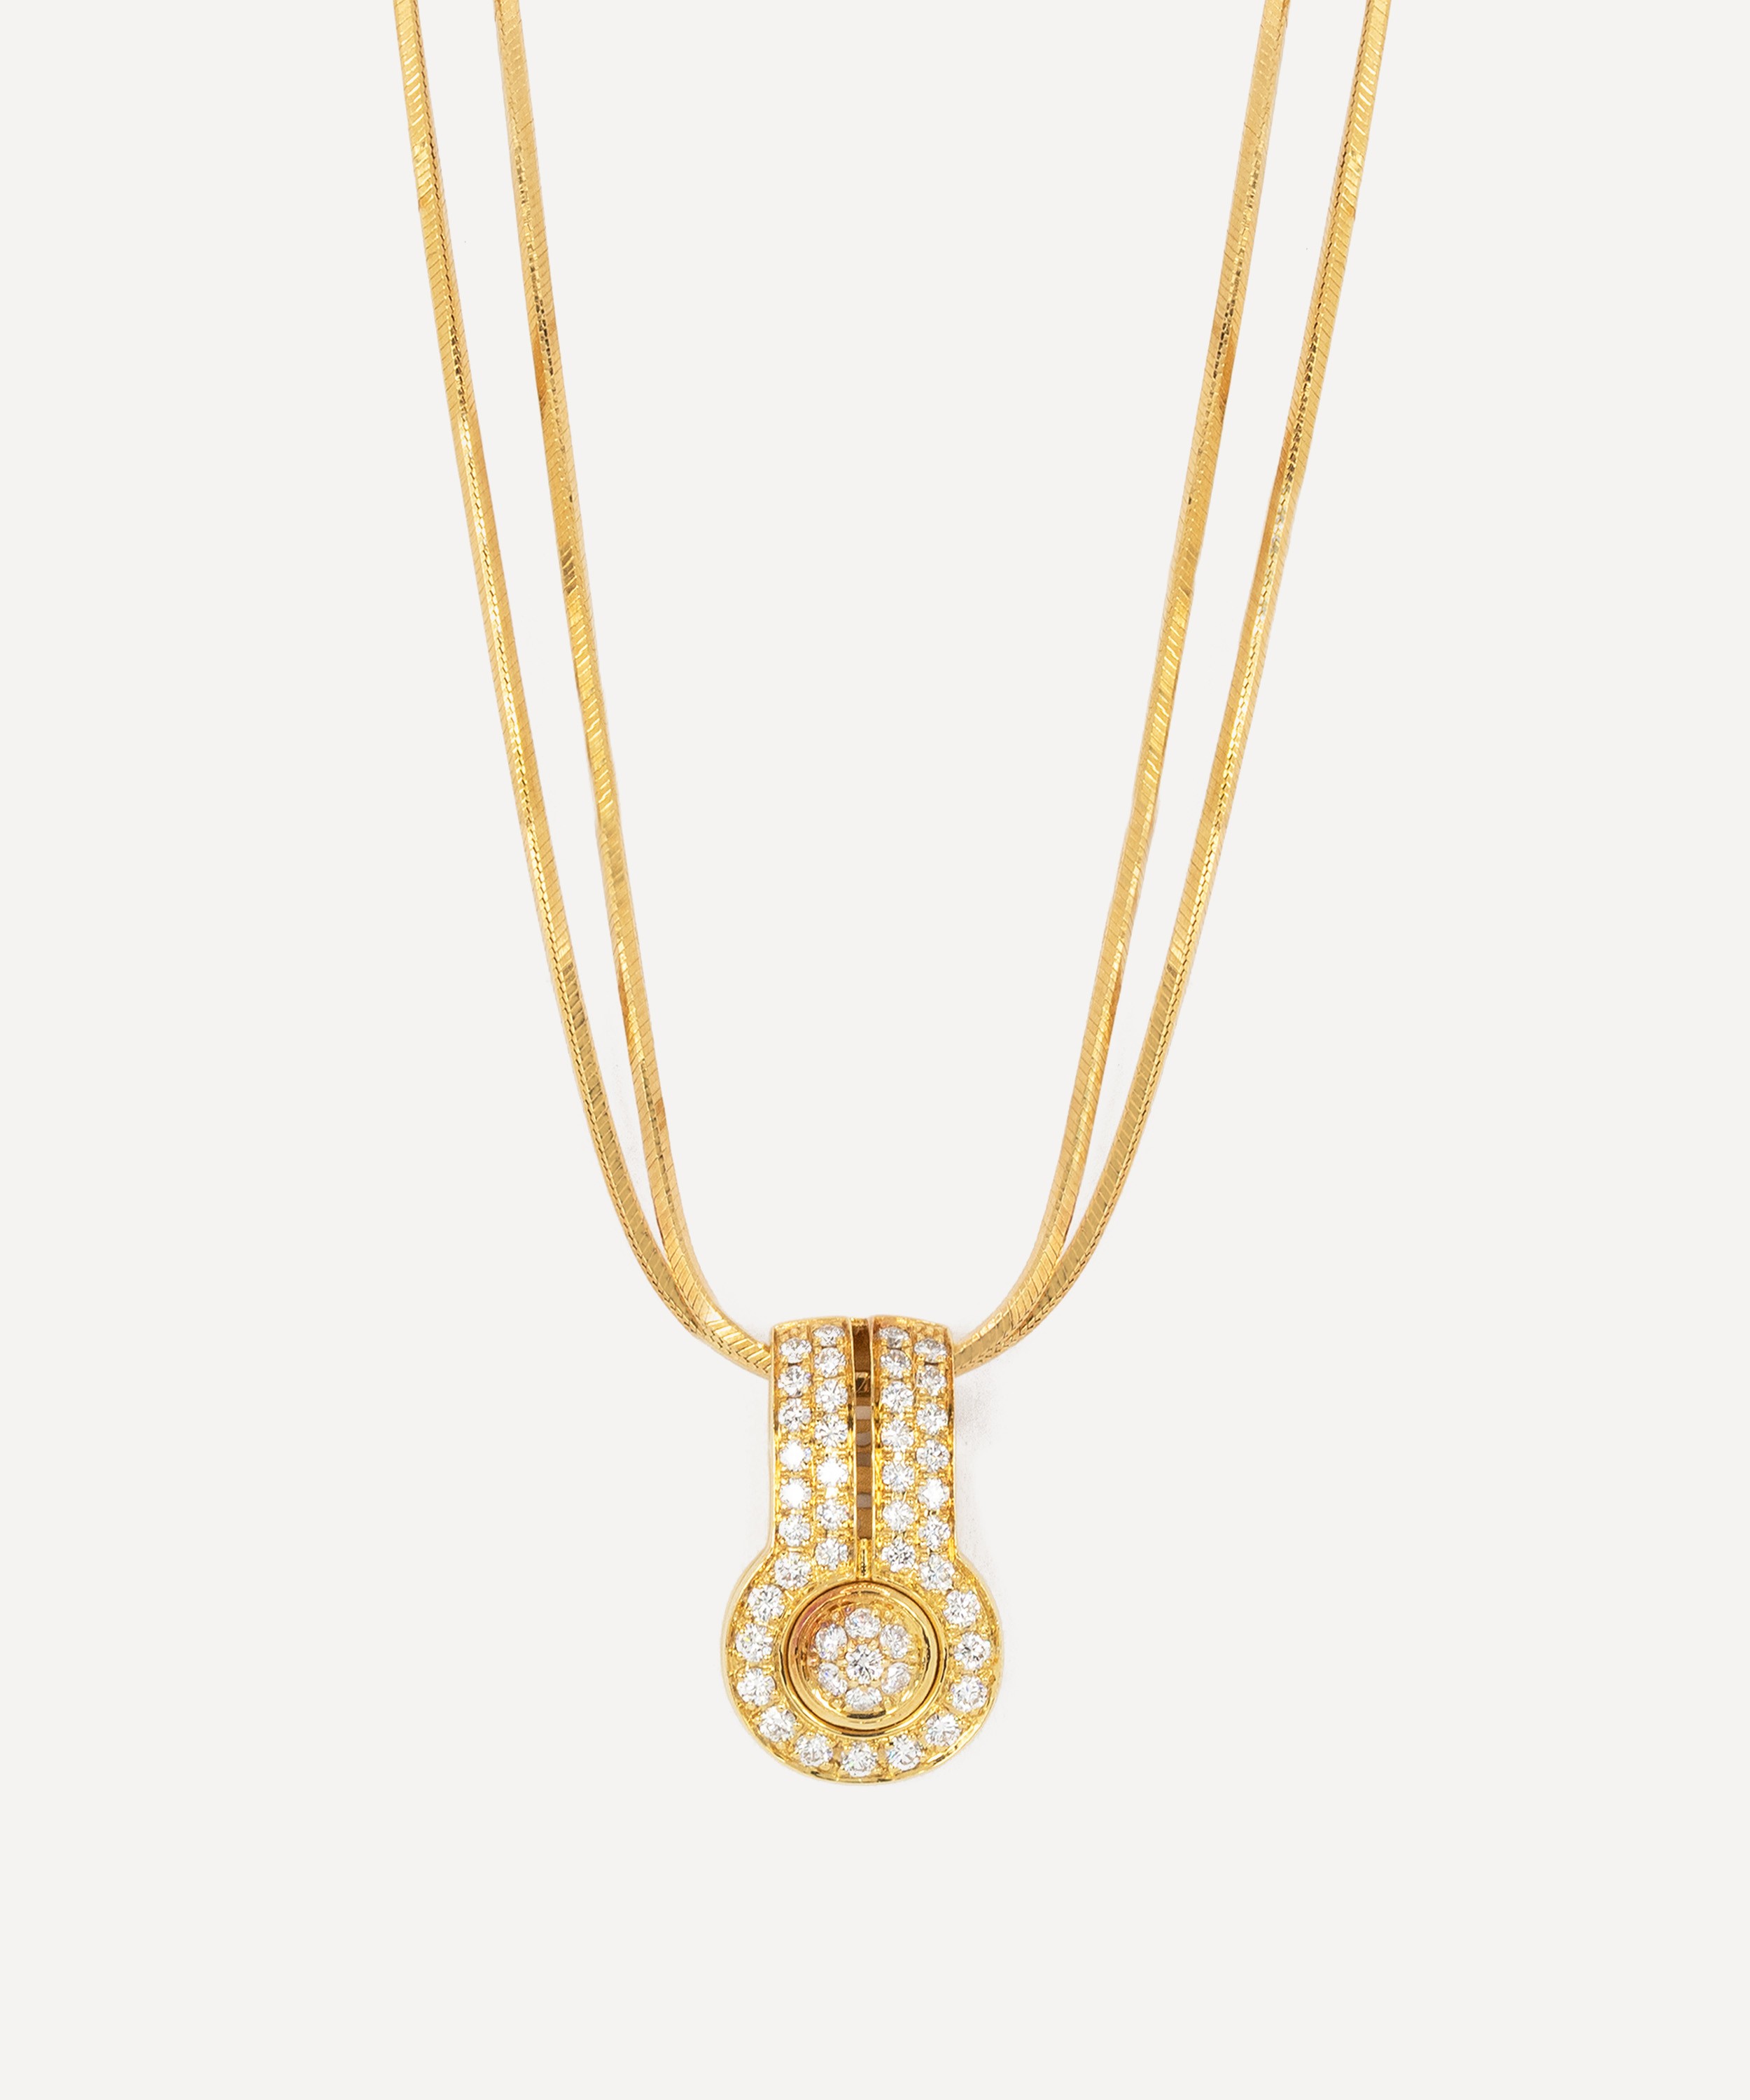 Kojis - 18ct Gold Di Modolo Diamond Pendant Necklace